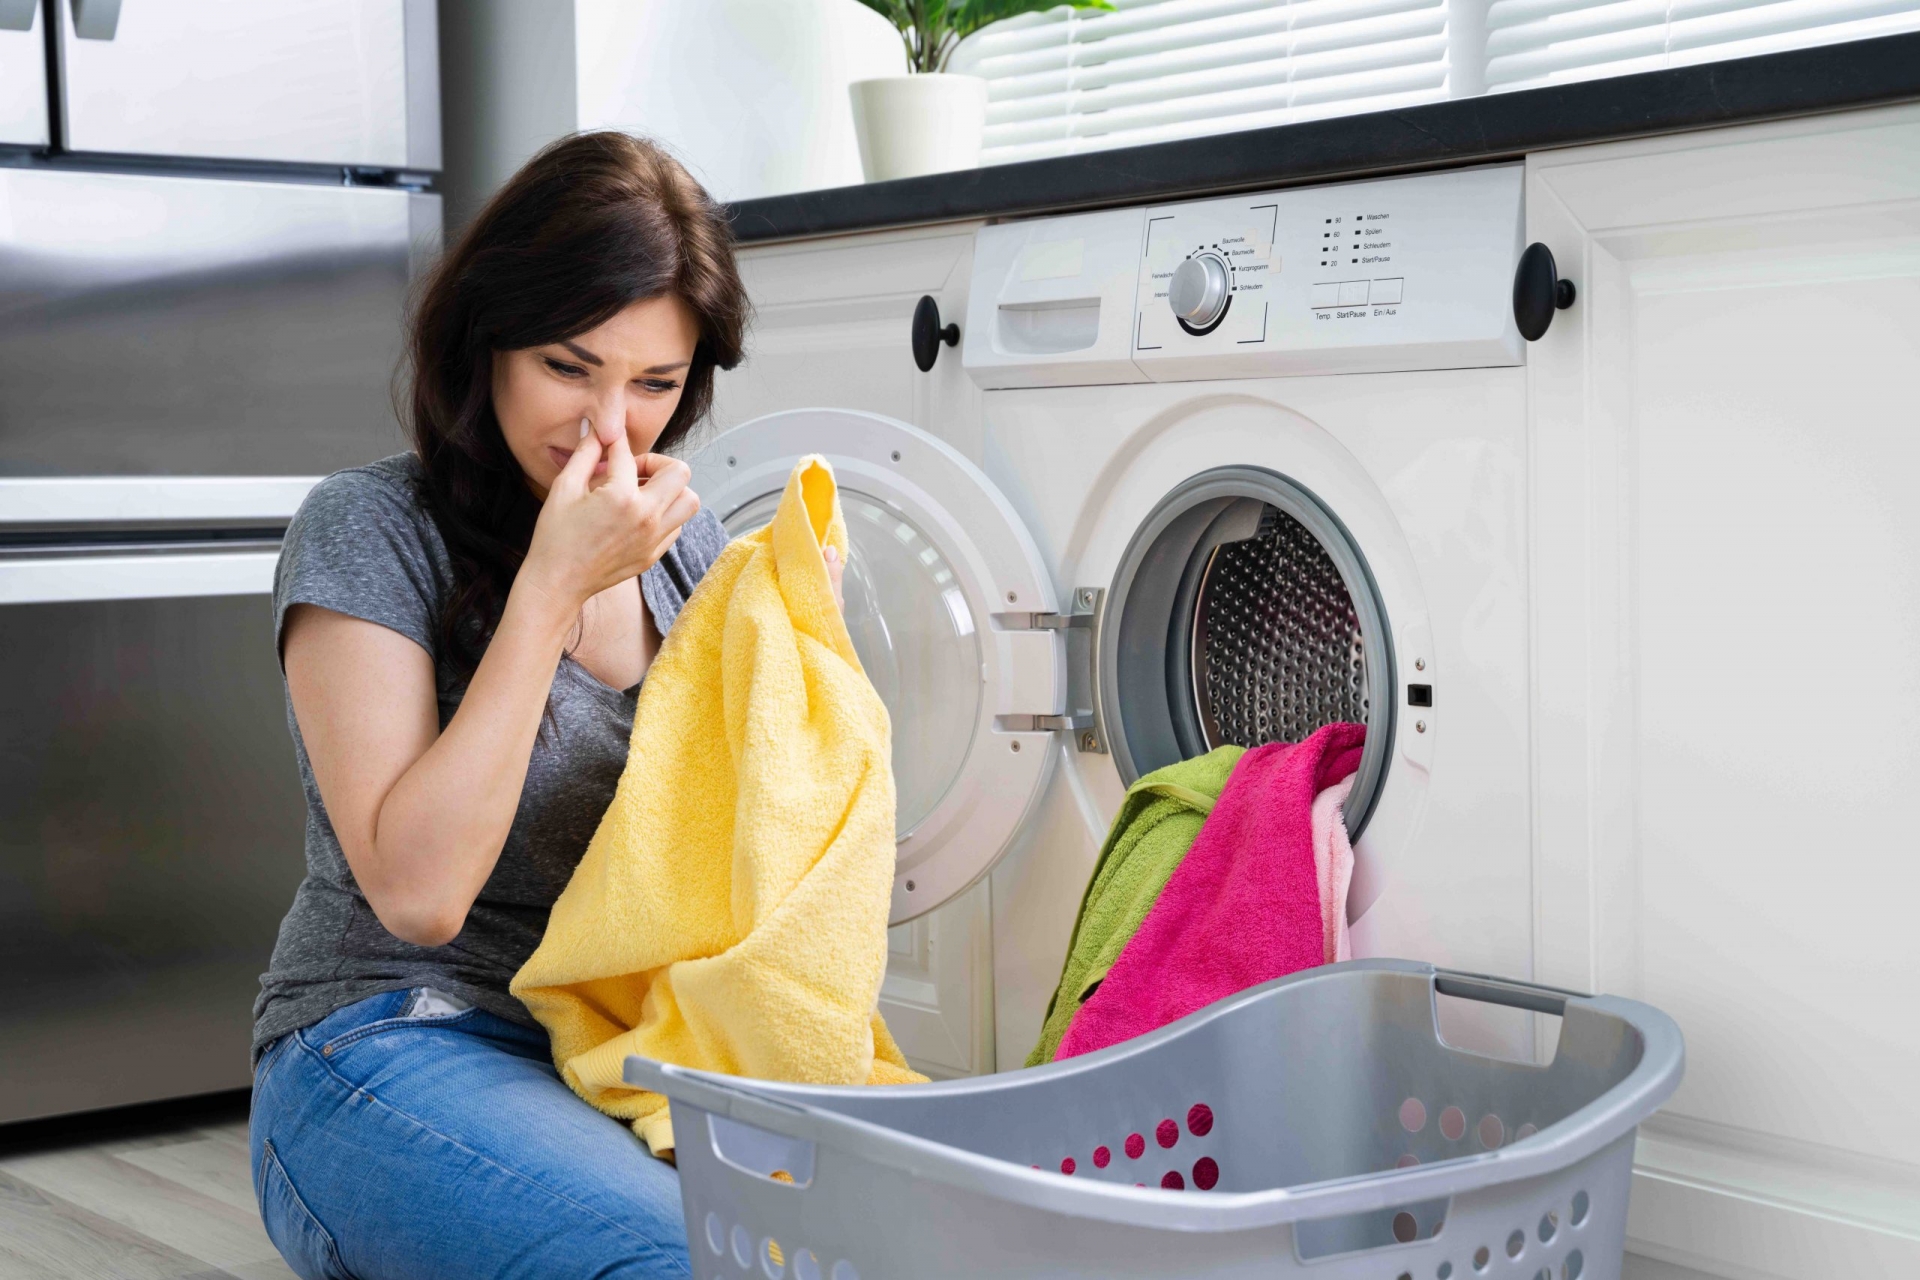  Sau thời gian sử dụng, máy giặt sẽ xuất hiện mùi hôi, ẩm mốc và thậm chí lan sang cả quần áo được giặt.